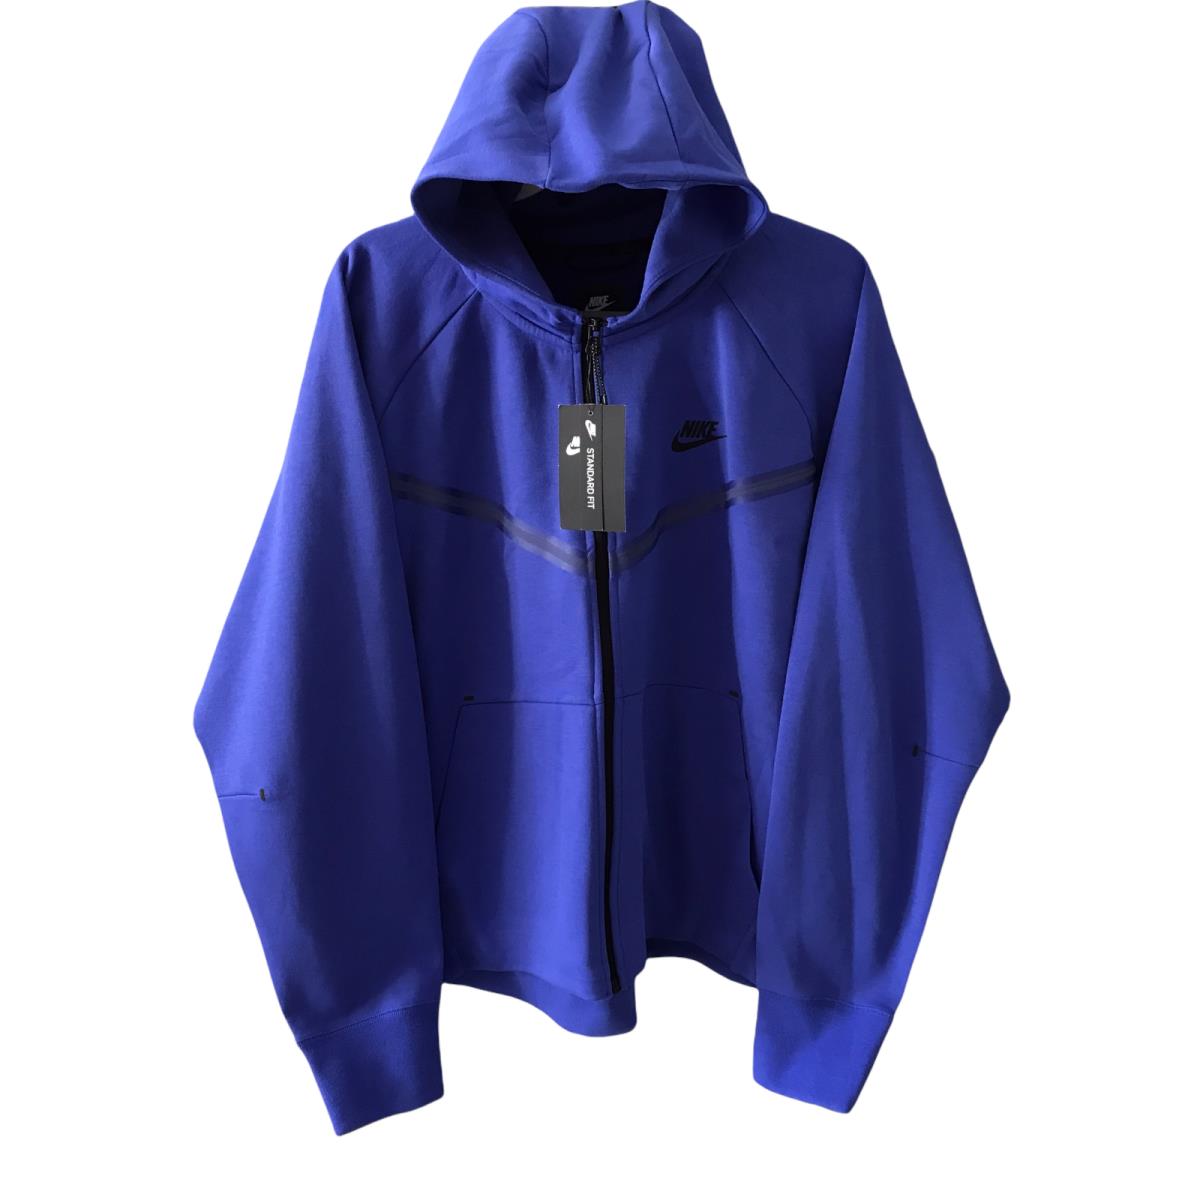 Nike Sportswear Tech Fleece Jacket Women s SZ Xxl Blue CW4298-431